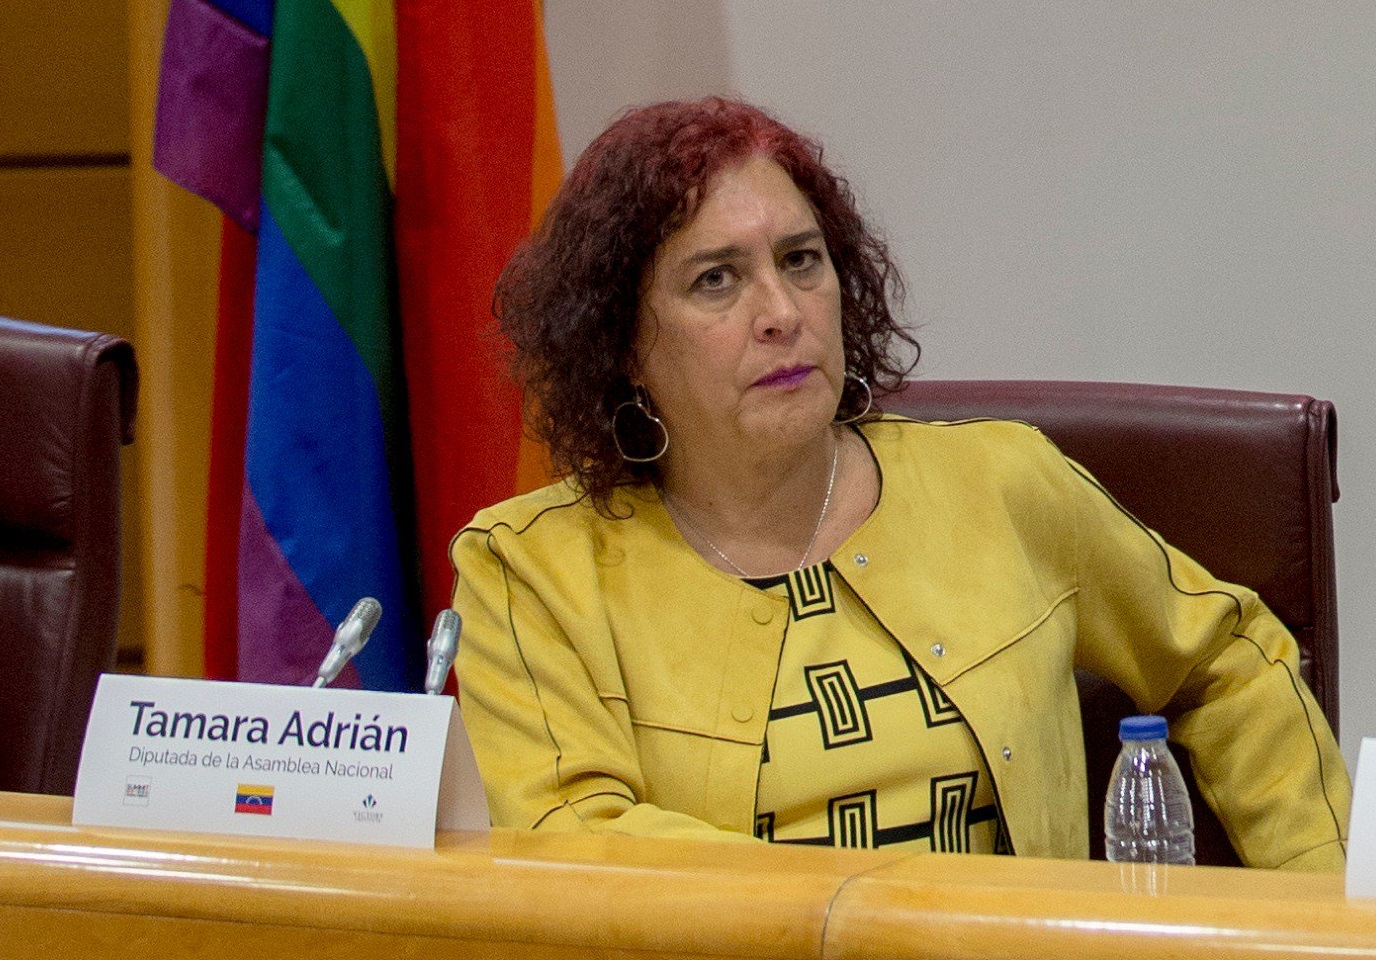 Tamara Adrián, exdiputada trans, competirá por la candidatura presidencial en Venezuela